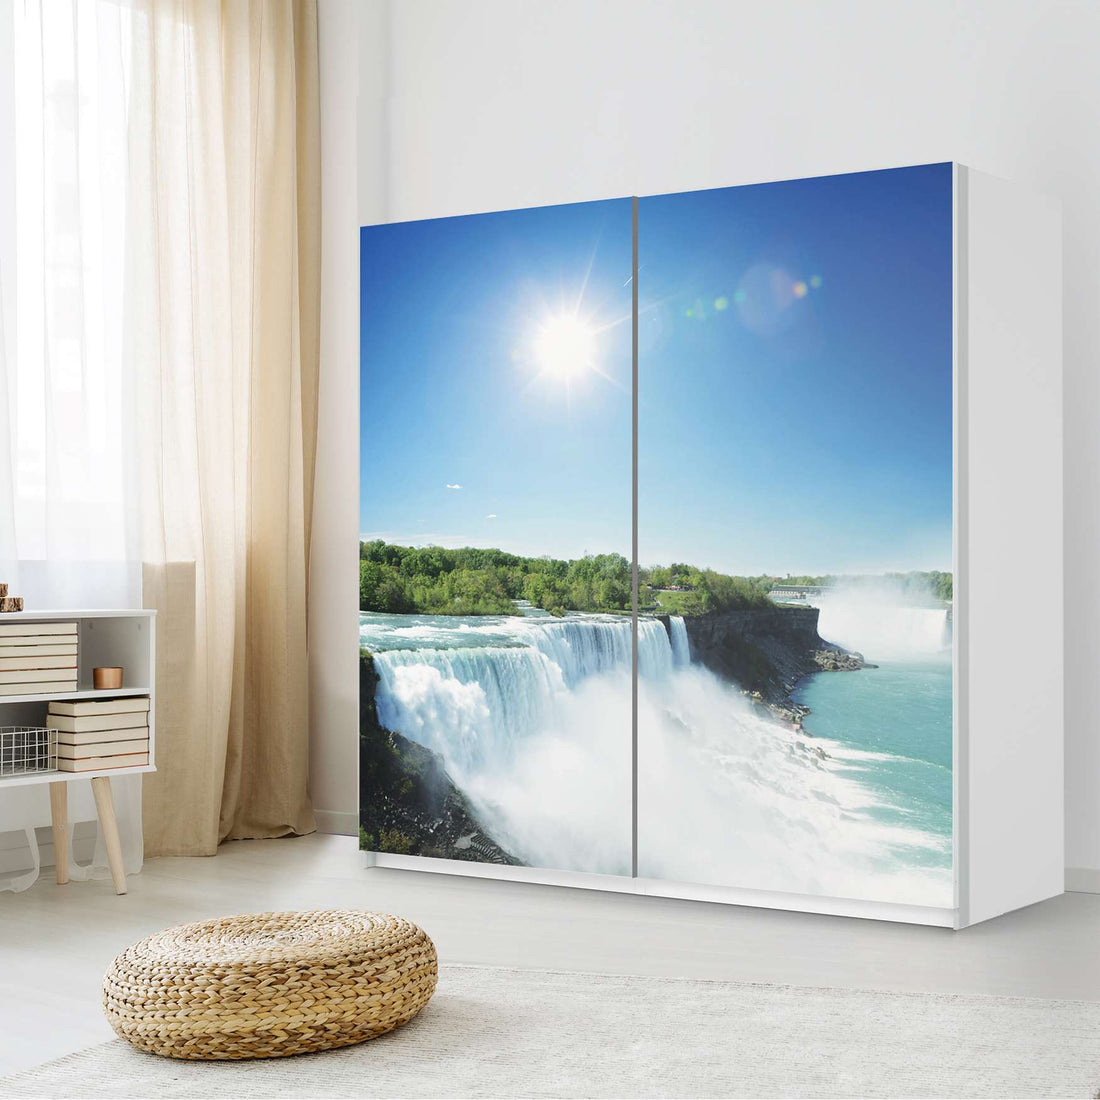 Möbel Klebefolie Niagara Falls - IKEA Pax Schrank 201 cm Höhe - Schiebetür - Schlafzimmer